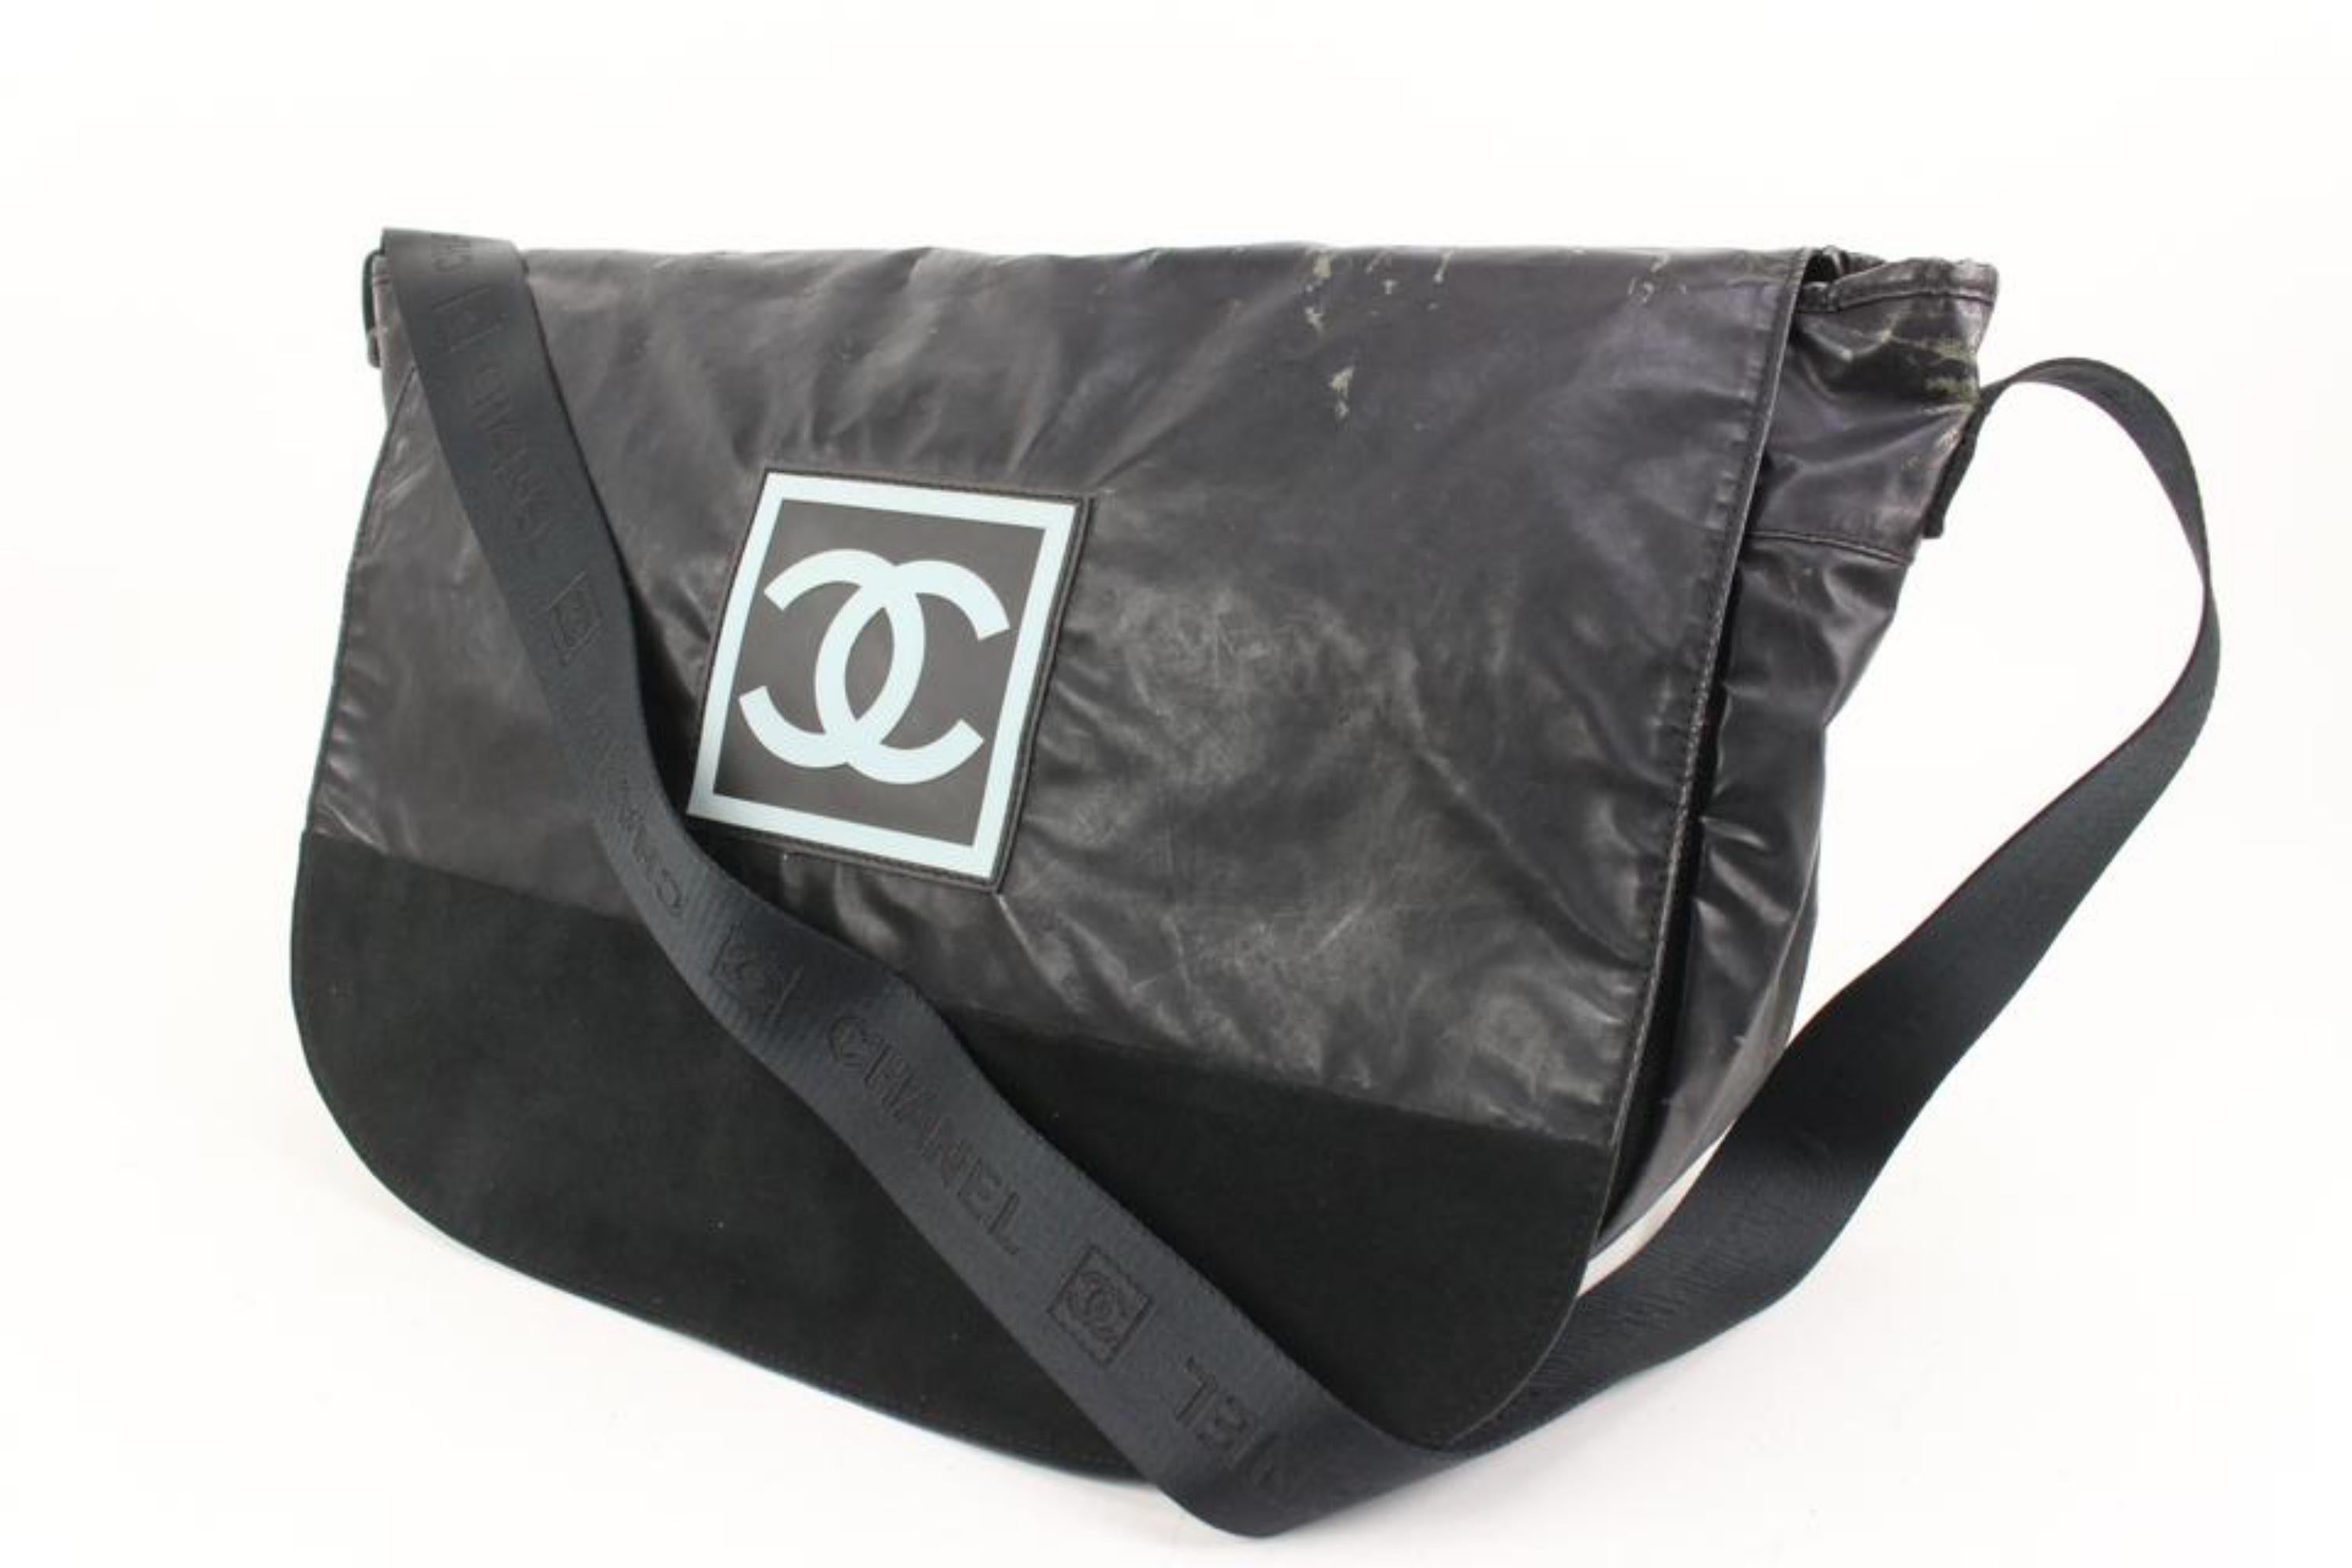 Chanel XL Black Sports Logo Messenger Bag 92cz418s
Code de date/Numéro de série : 8610376
Fabriqué en : Italie
Mesures : Longueur :  18.5